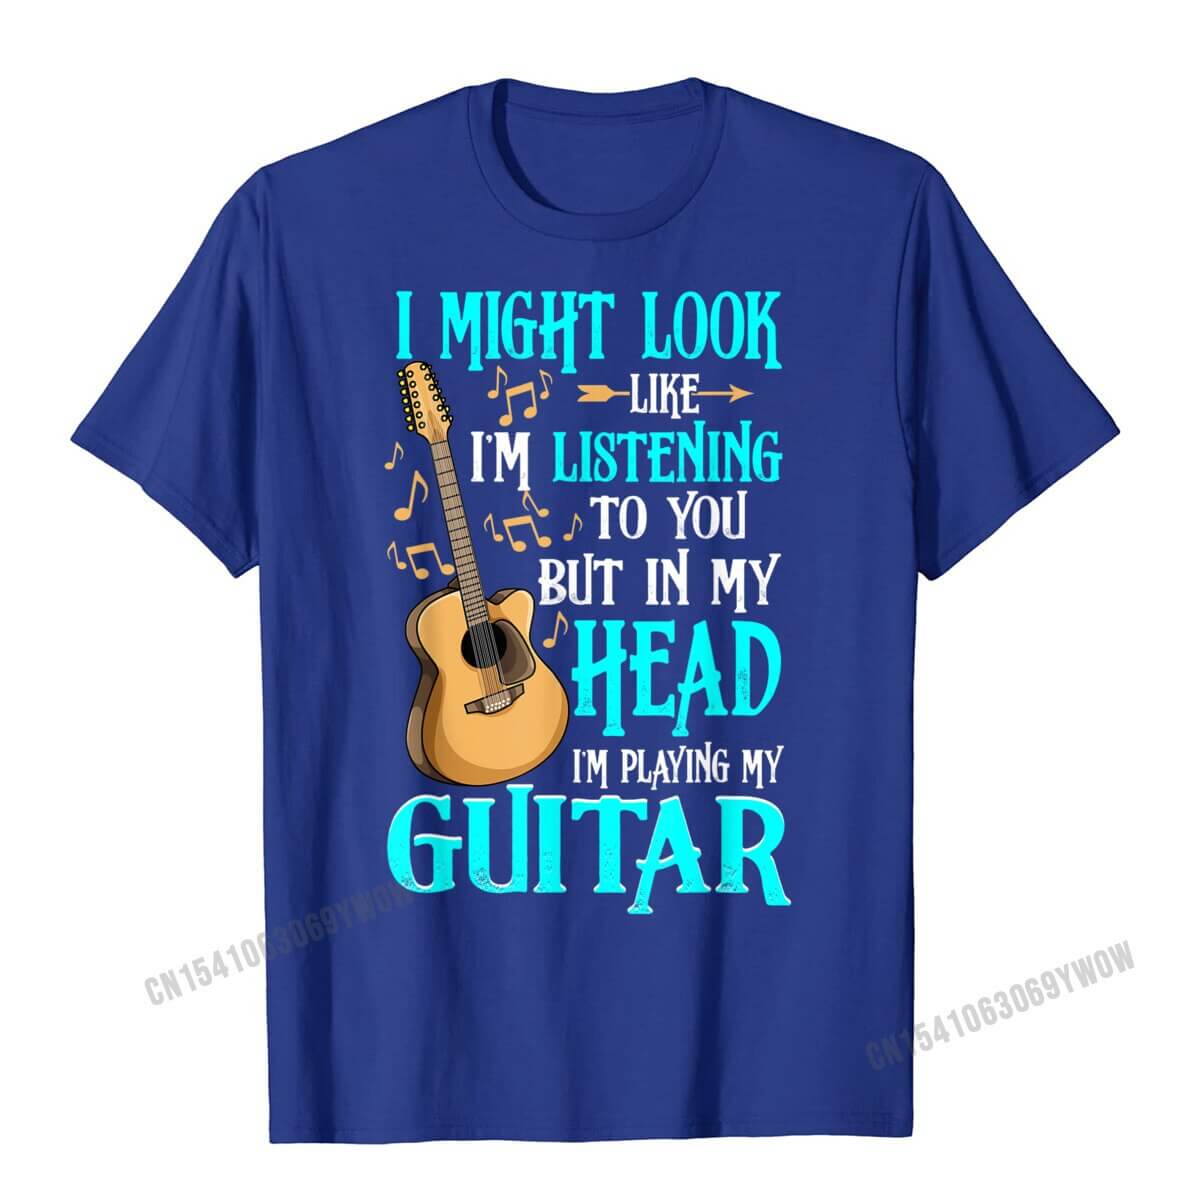 Unique and funny guitar print t-shirt Blue guitarmetrics